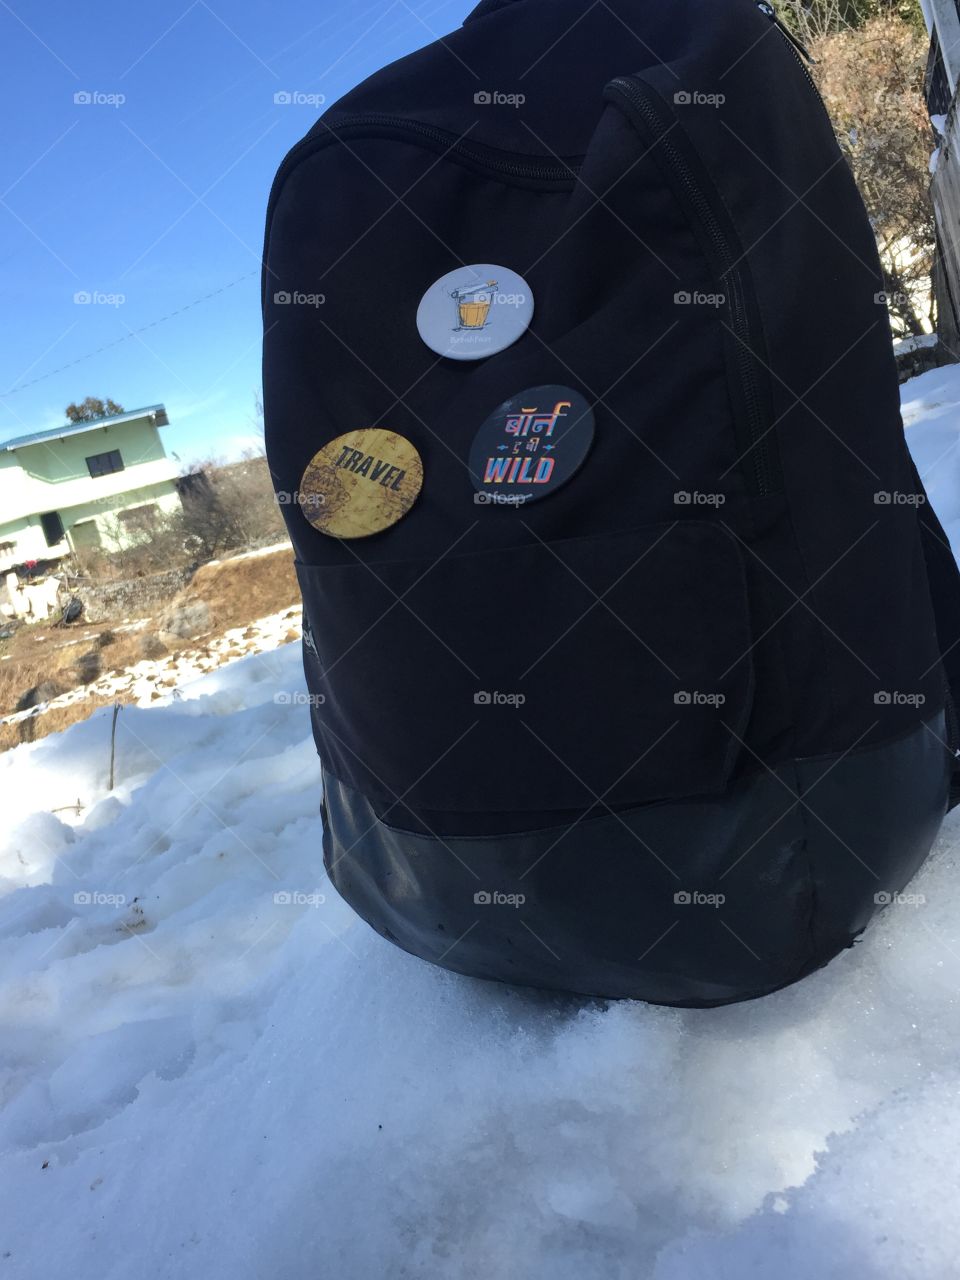 bag on snow